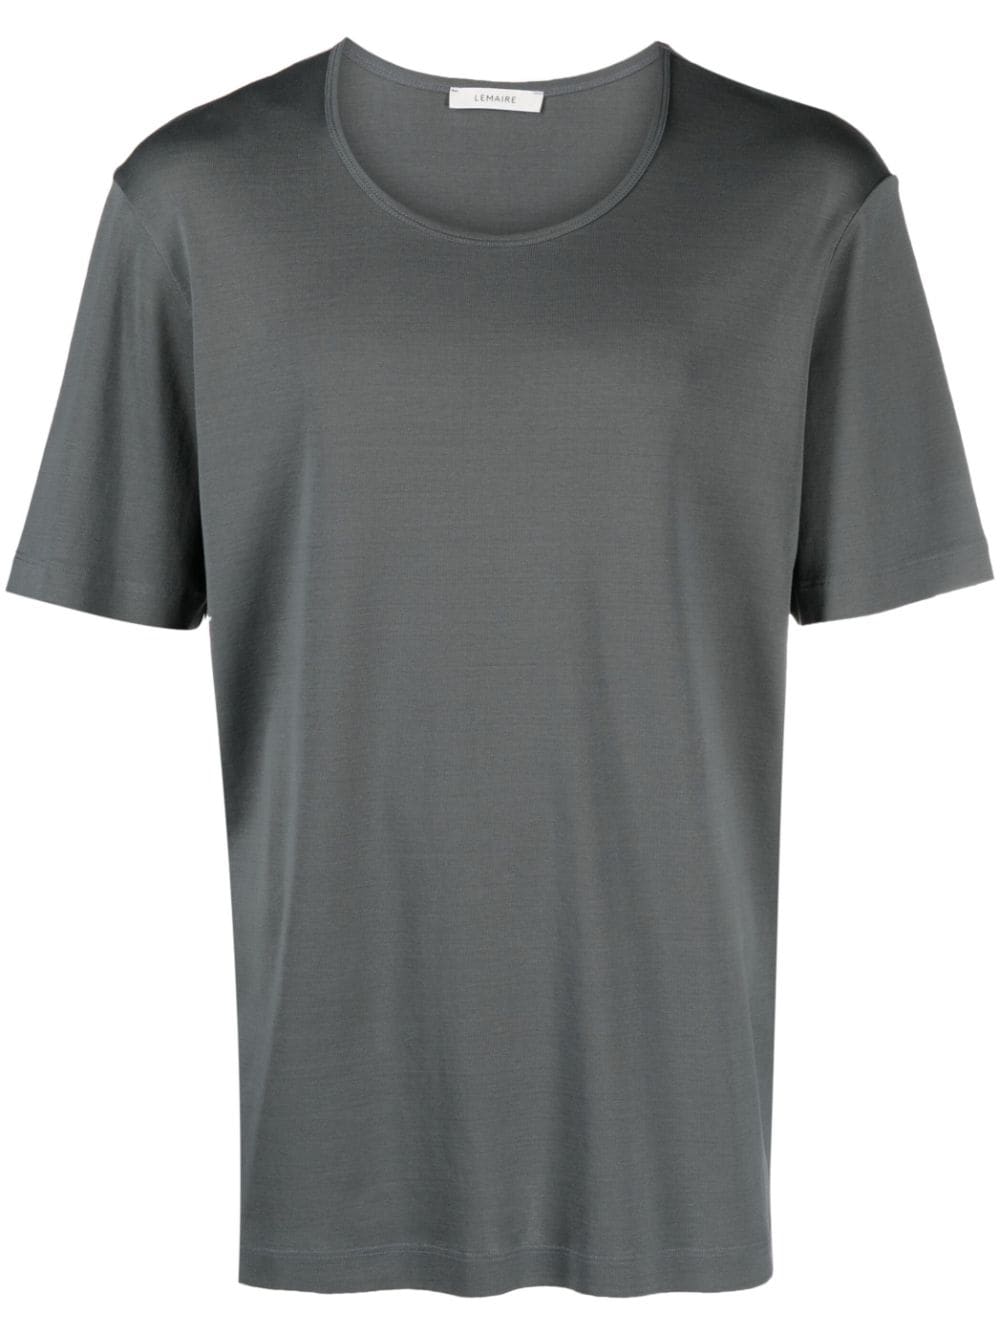 U-neck cotton T-shirt